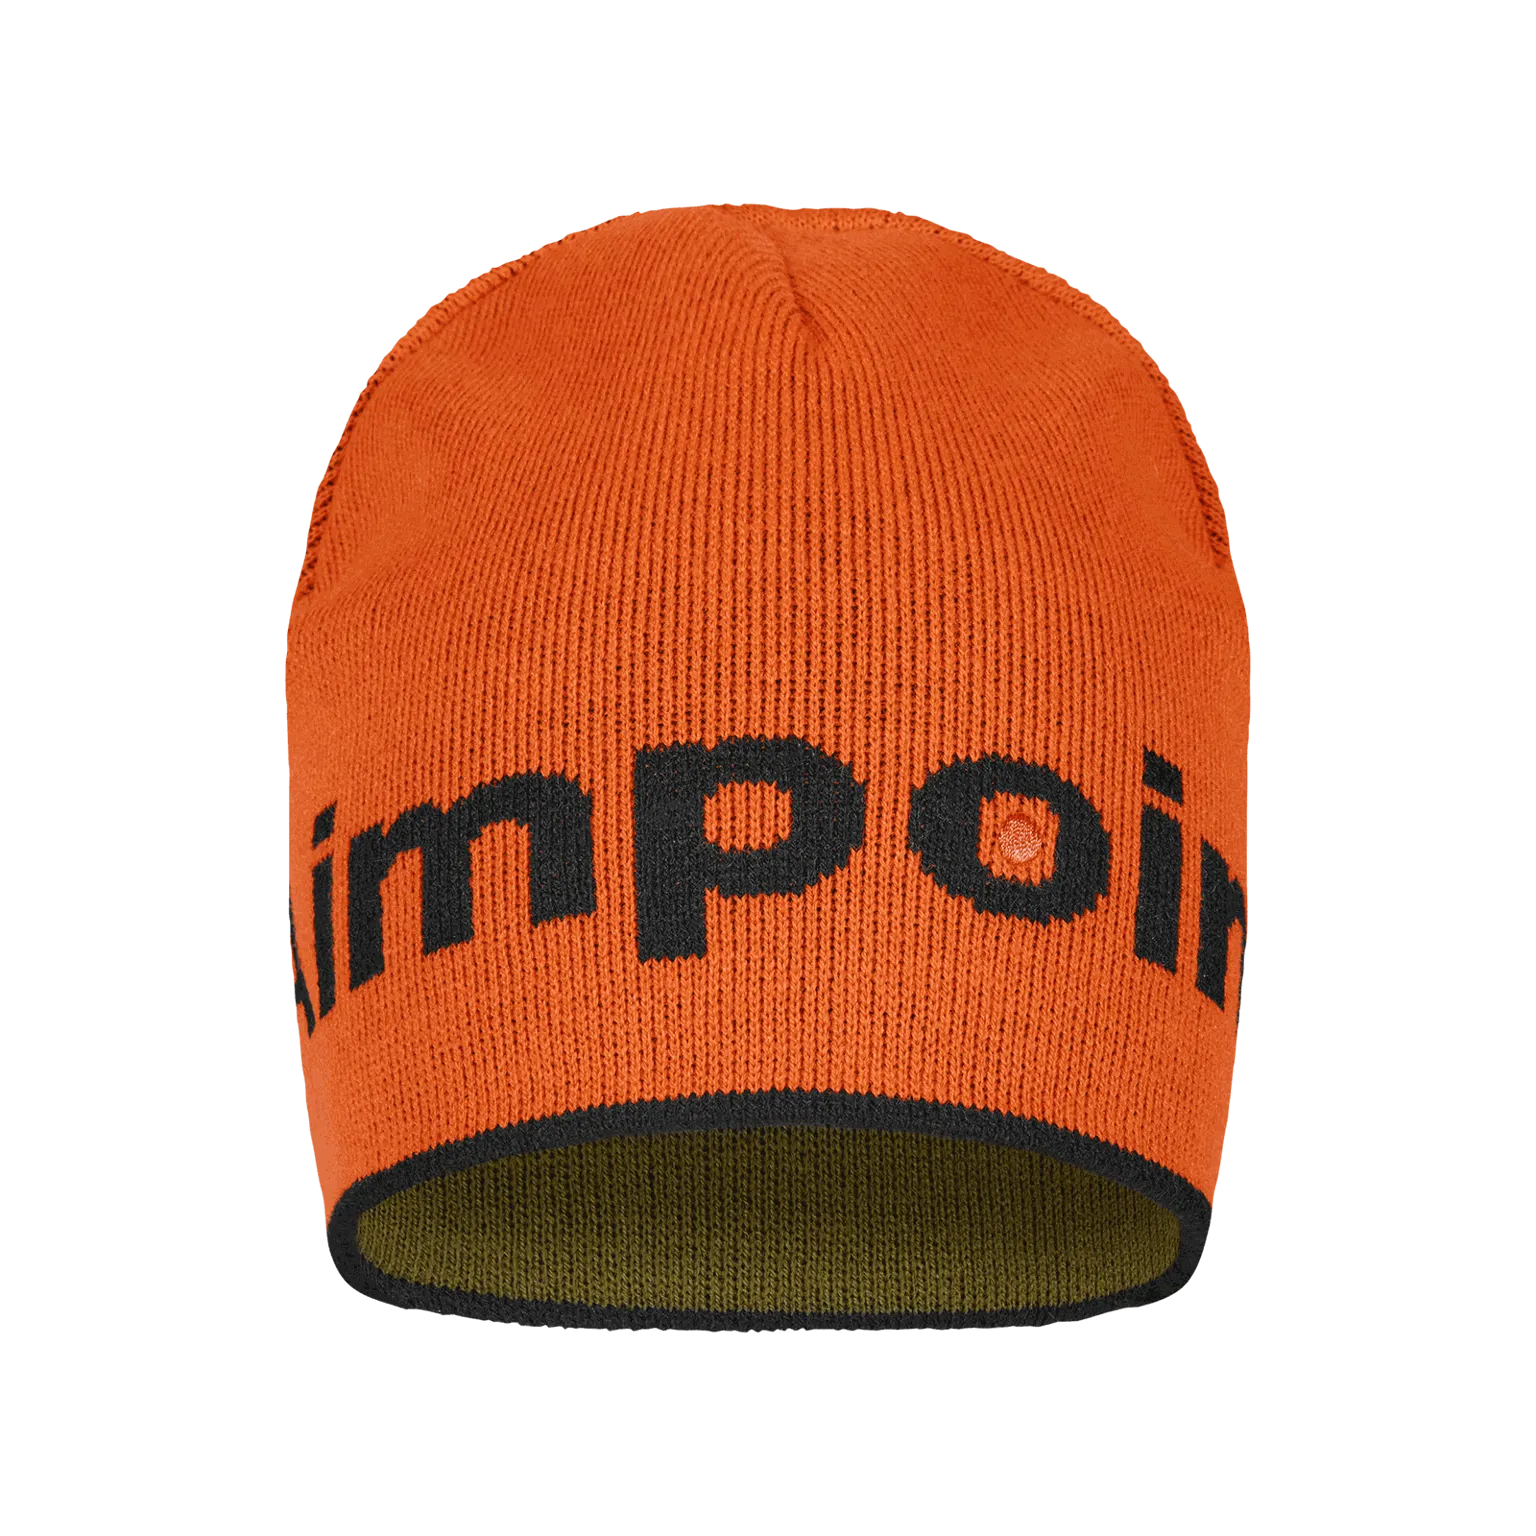 Berretto Aimpoint® - in maglia Cappello caldo reversibile arancione e verde  - 3